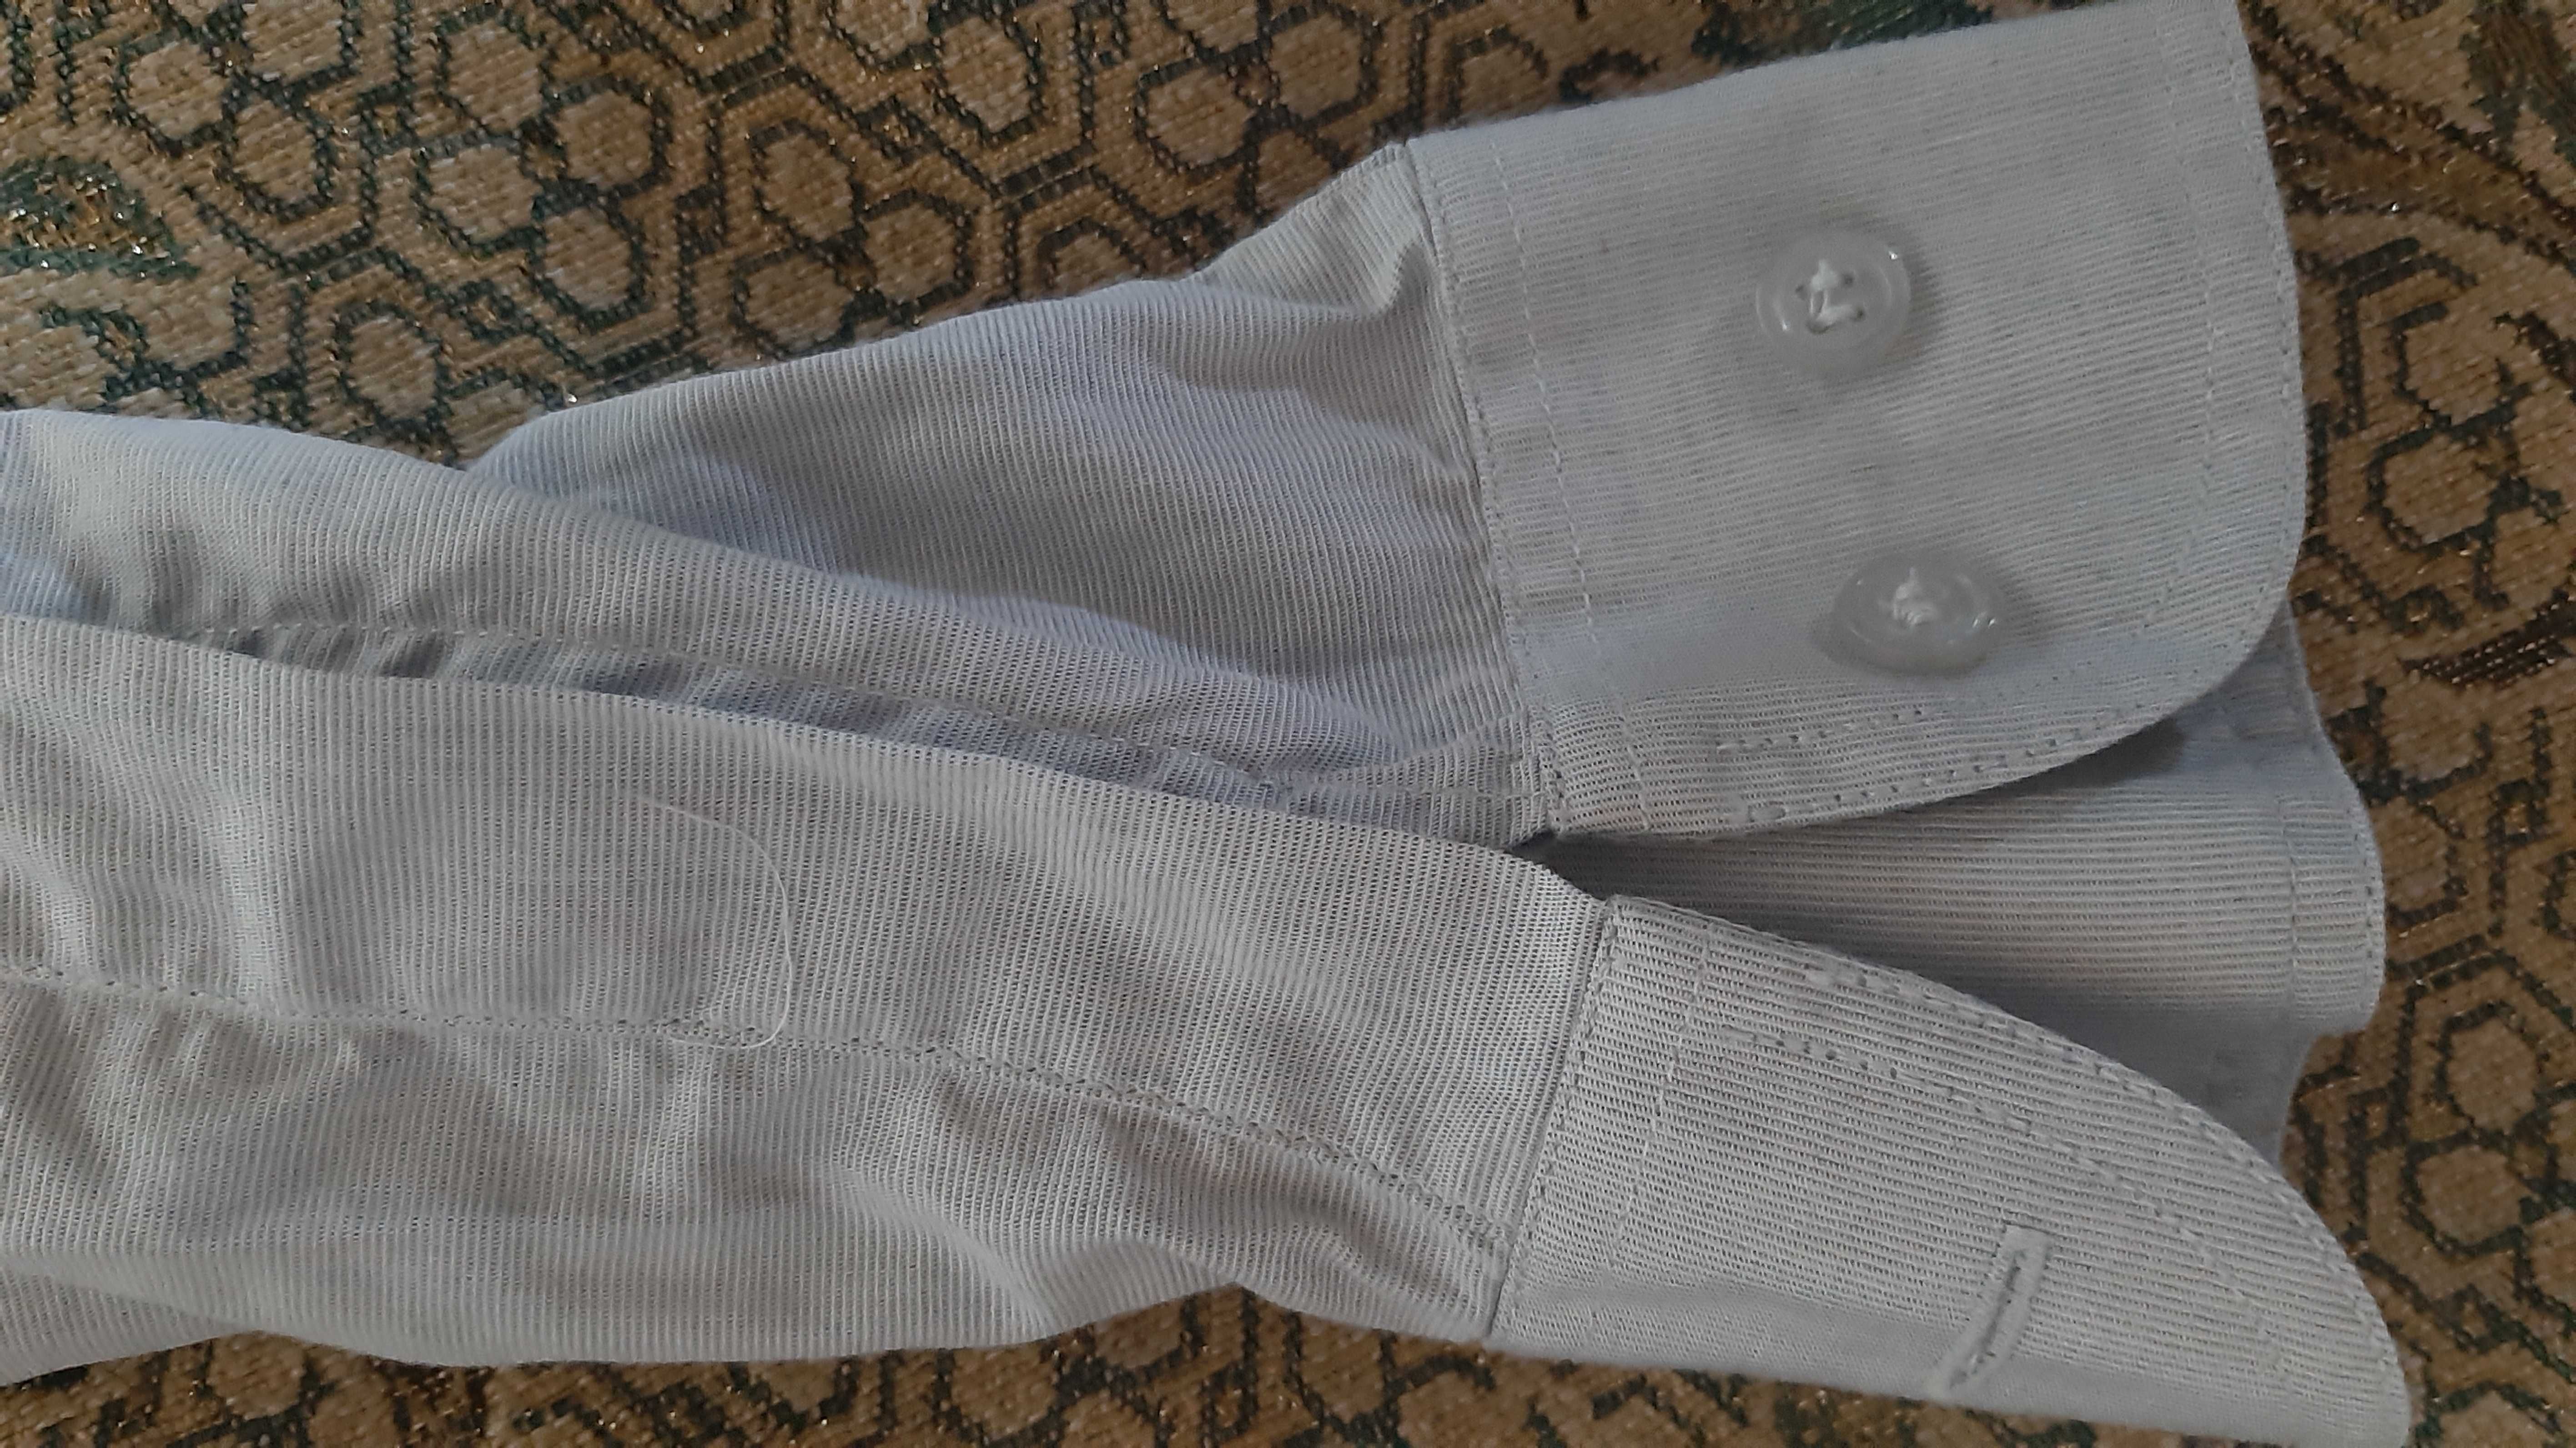 Мужская котоновая рубашка под джинс на стройного высокого (р. 34)